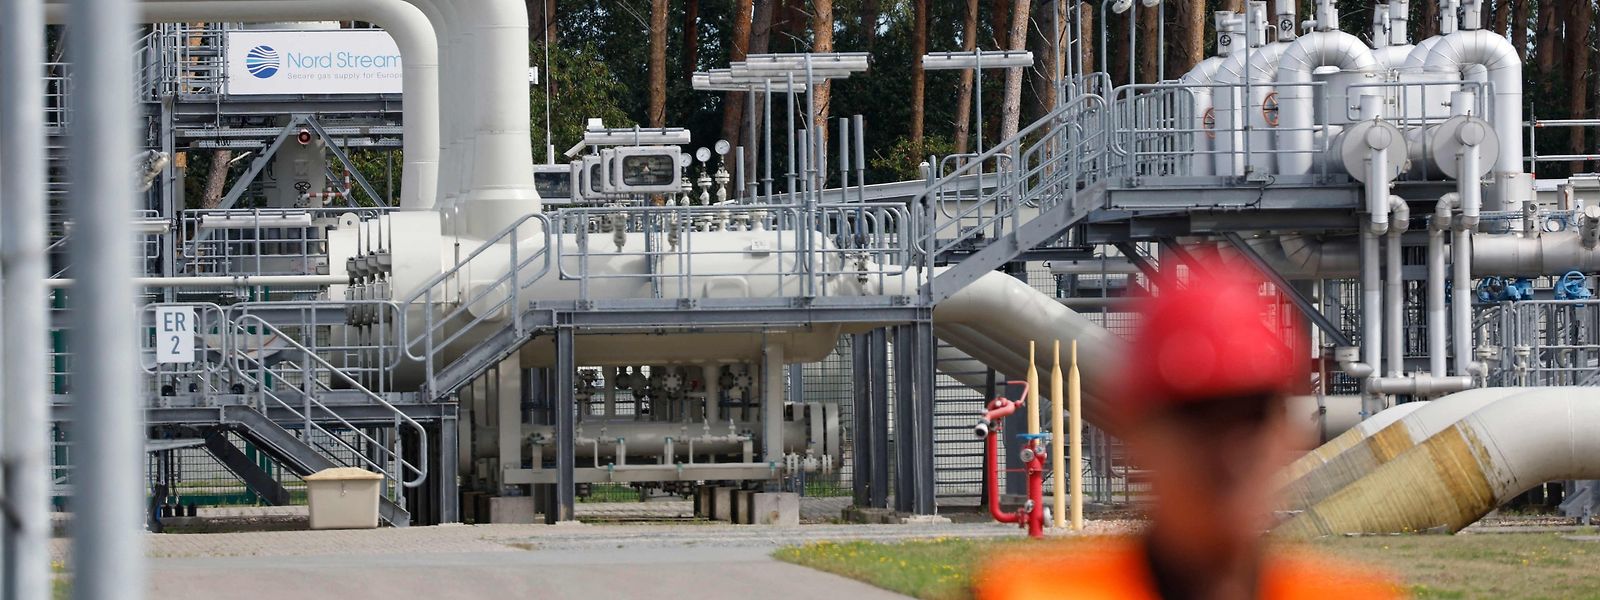 O Nord Stream 2 estava a ponto de se tornar no maior canal de abastecimento de gás russo para a Alemanha. O seu funcionamento foi cancelado após a invasão da Ucrânia pela Rússia.